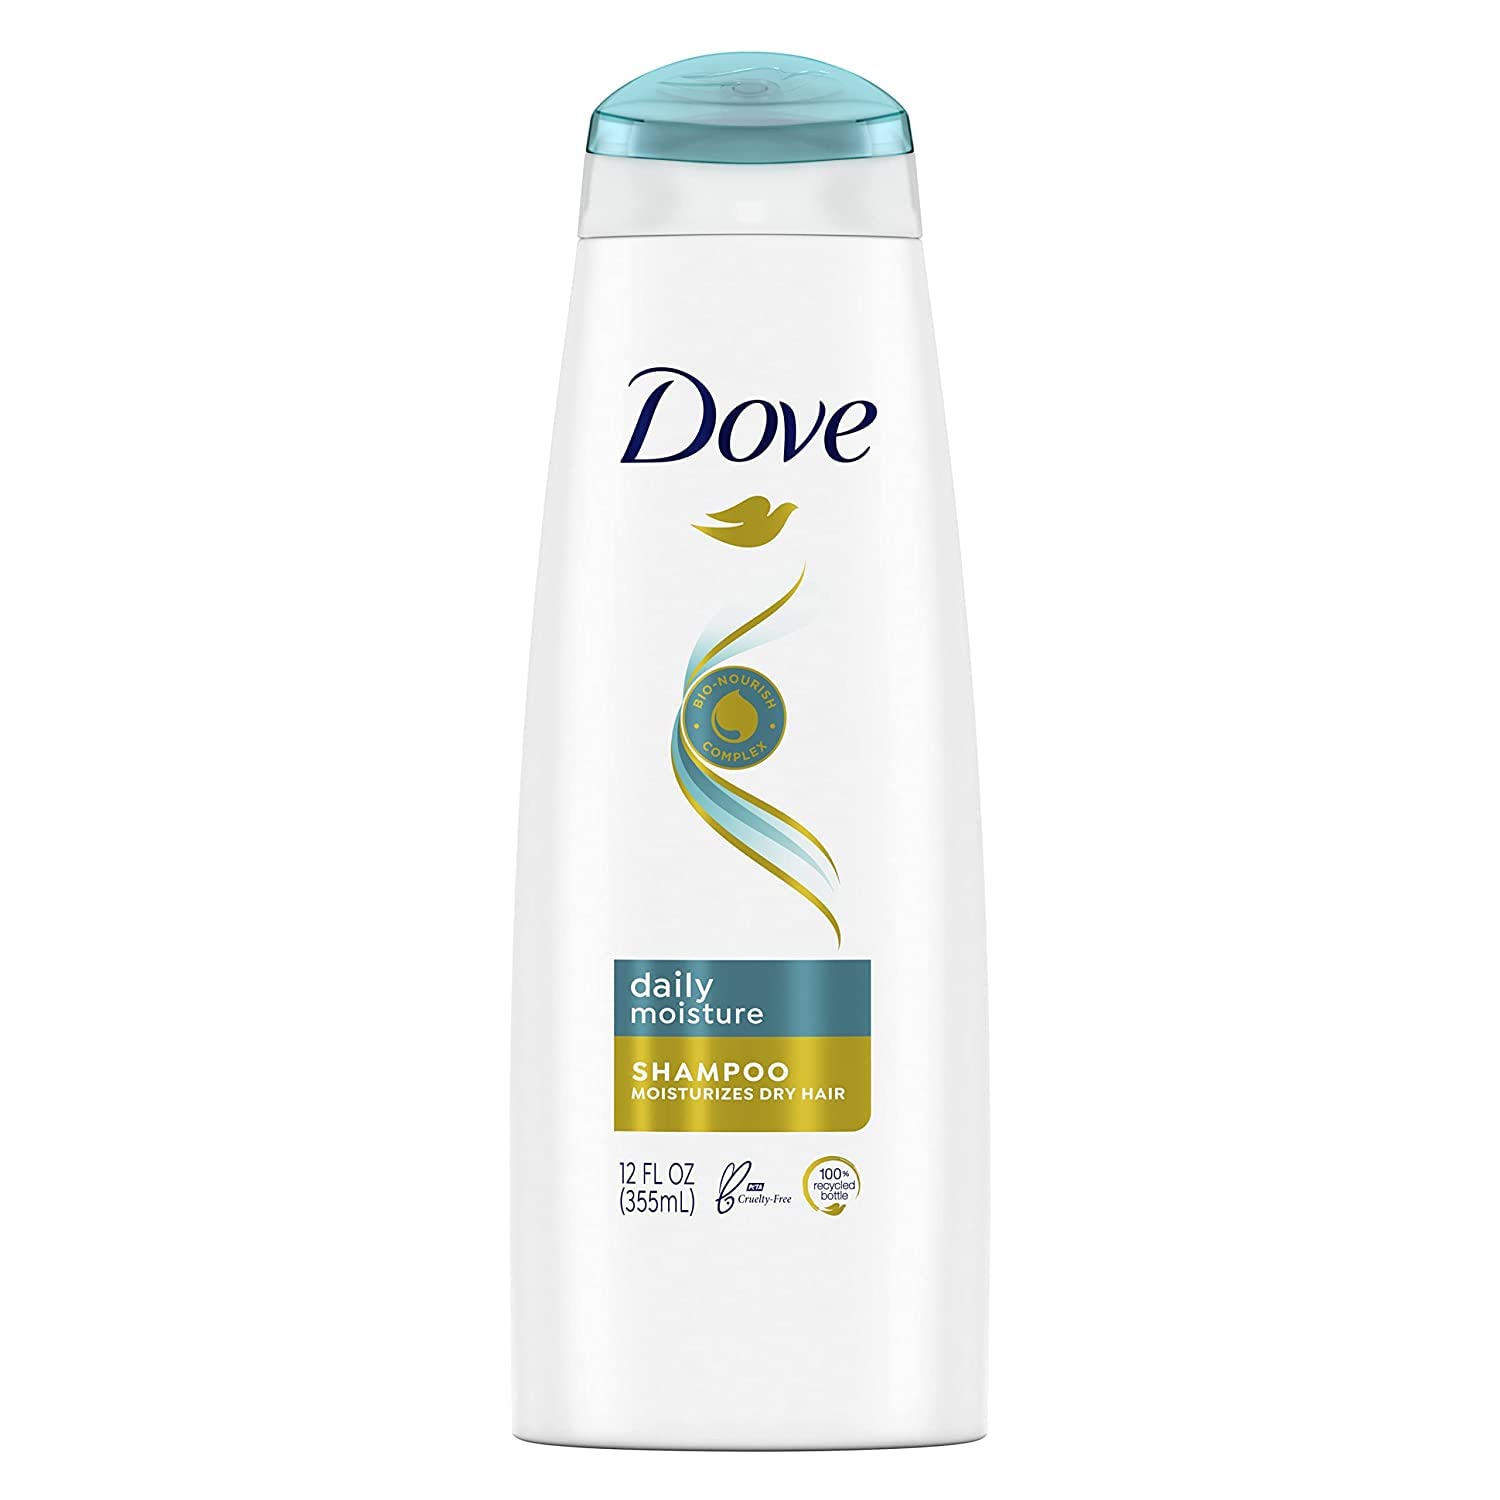 szampon dove 250 ml